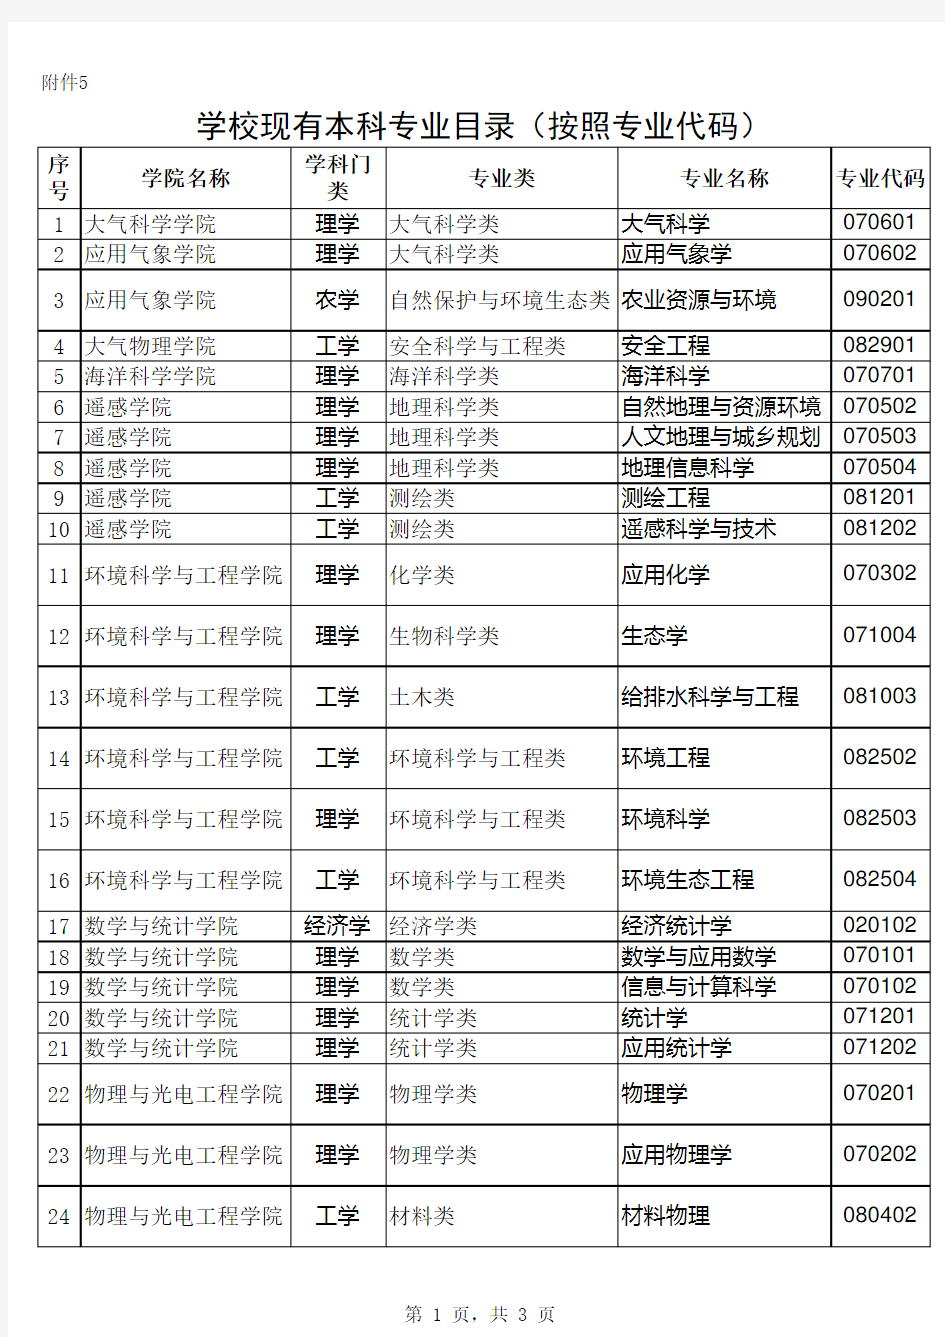 南京信息工程大学现有本科专业目录(按学院划分)